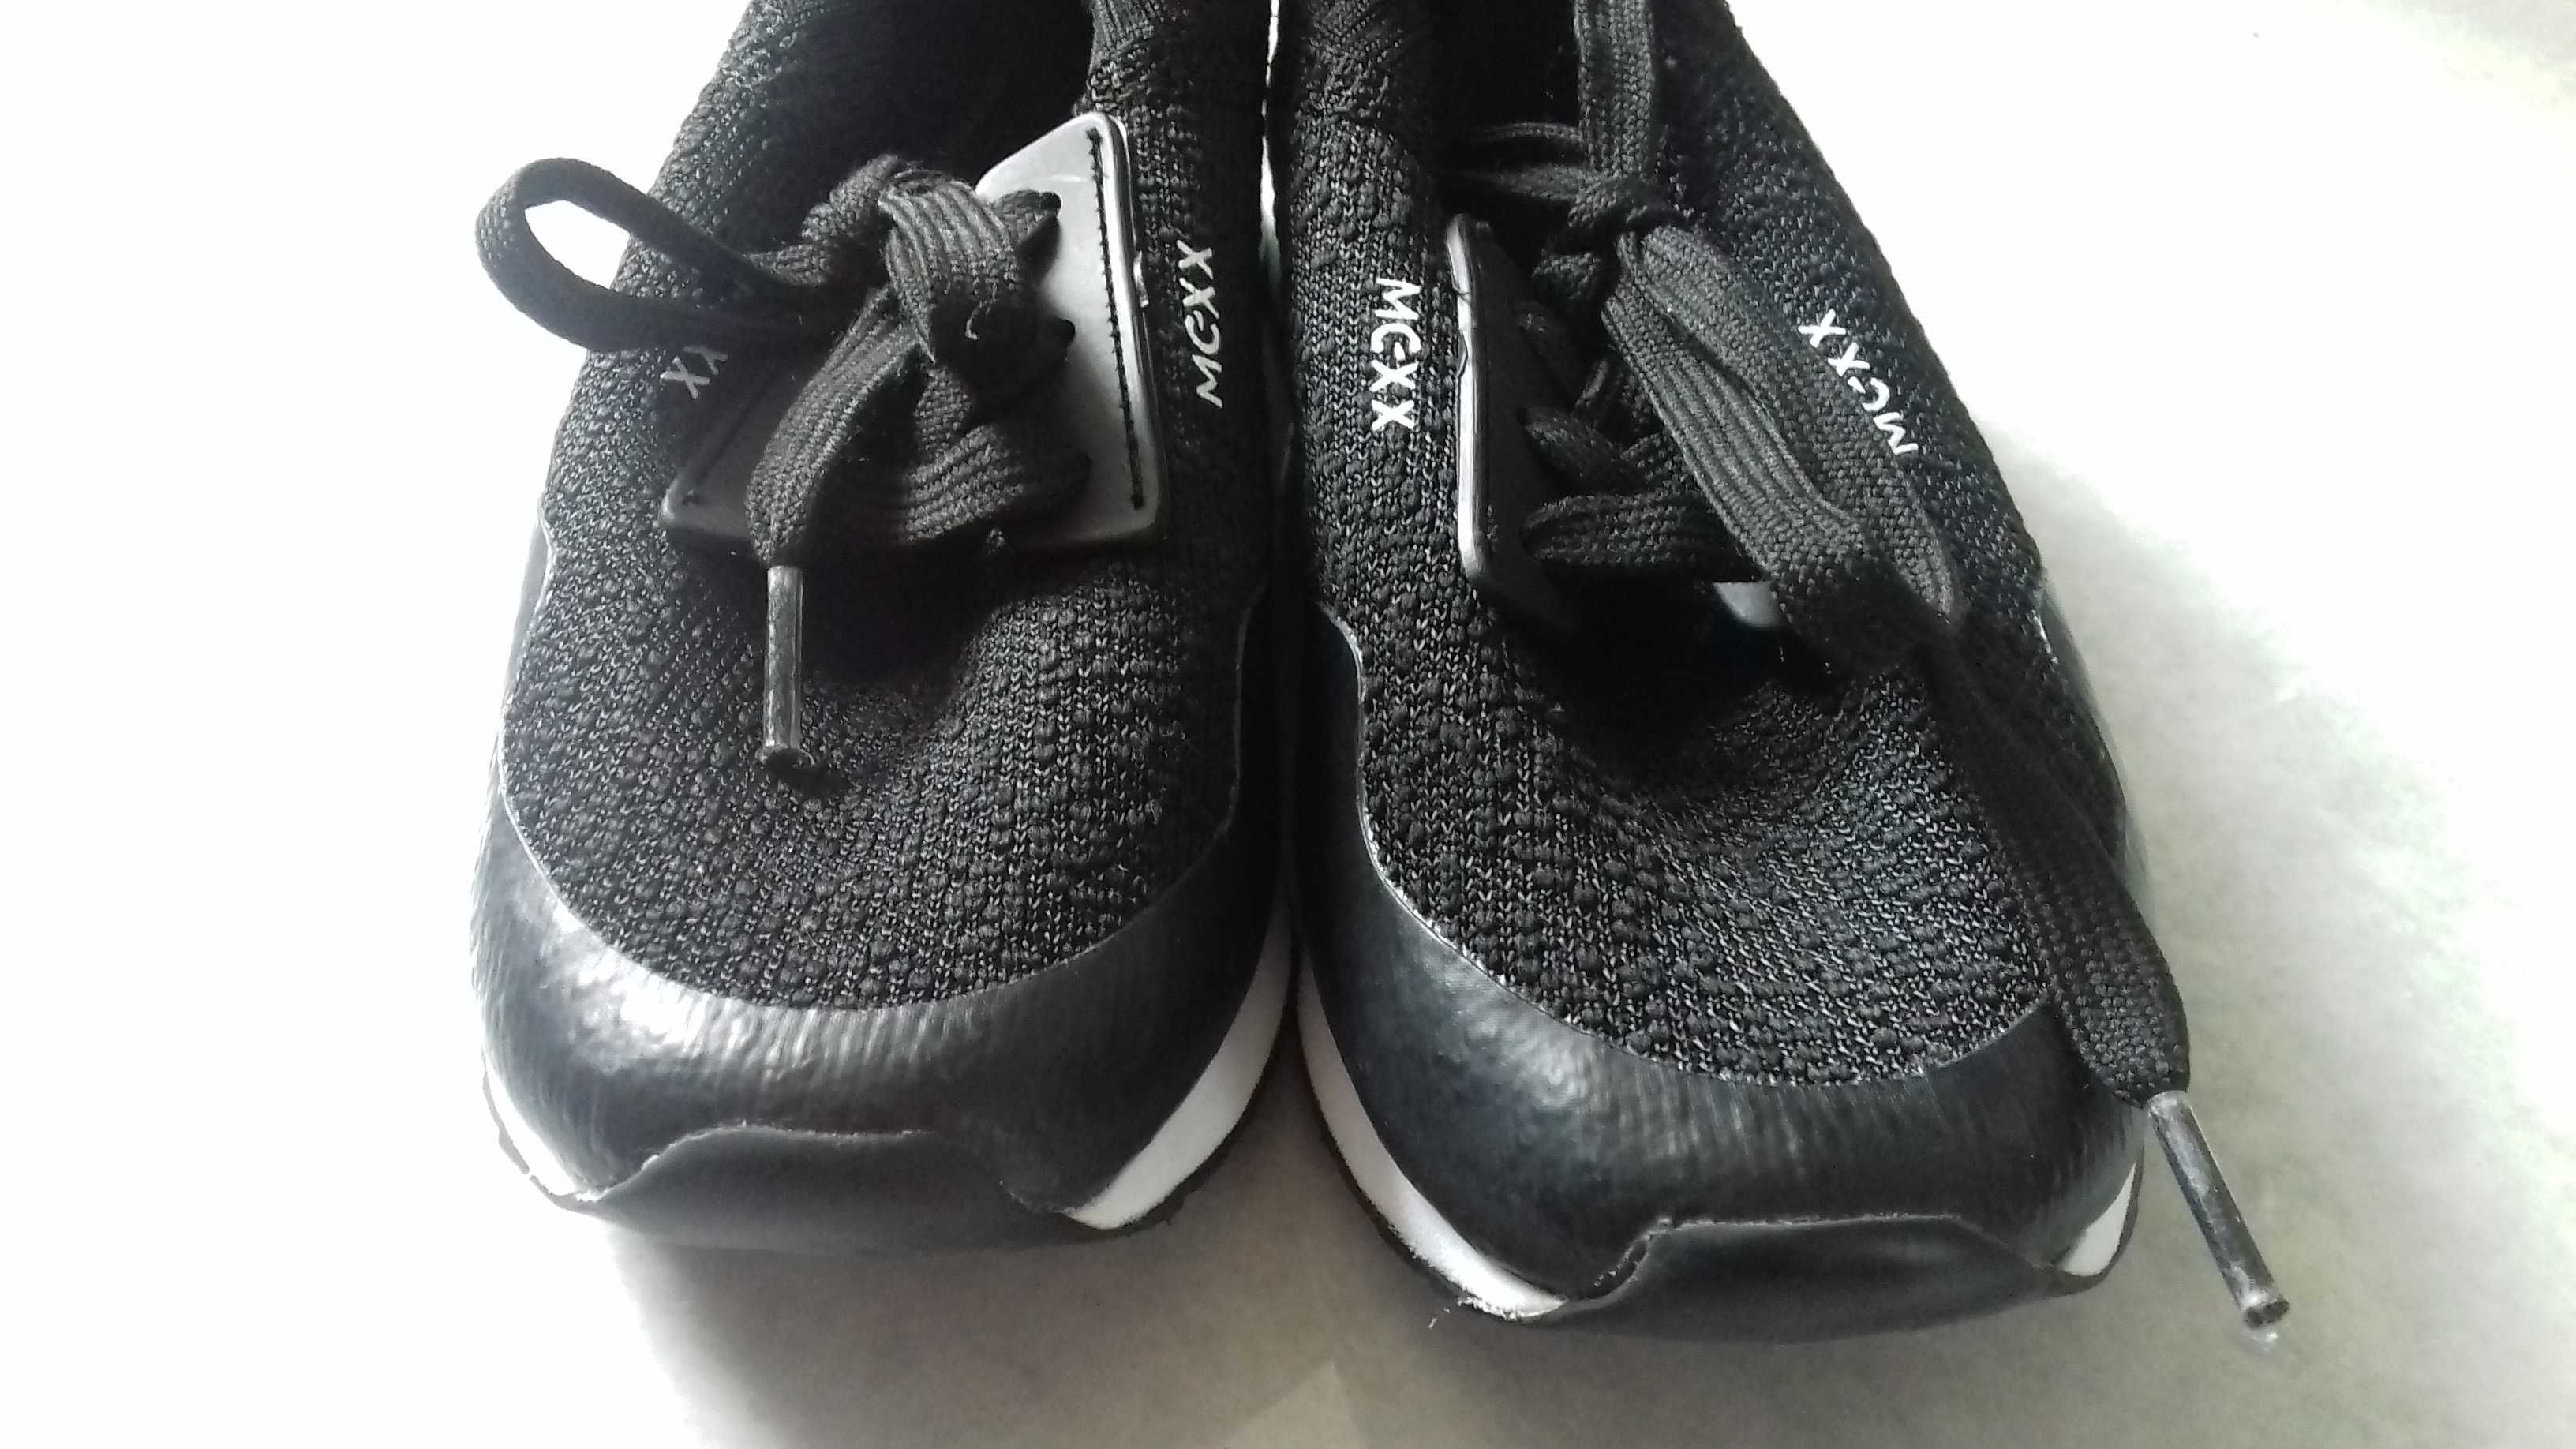 Buty czarne materiał Mexx pianka, chłopiec rozmiar 28, 29 stan bdb